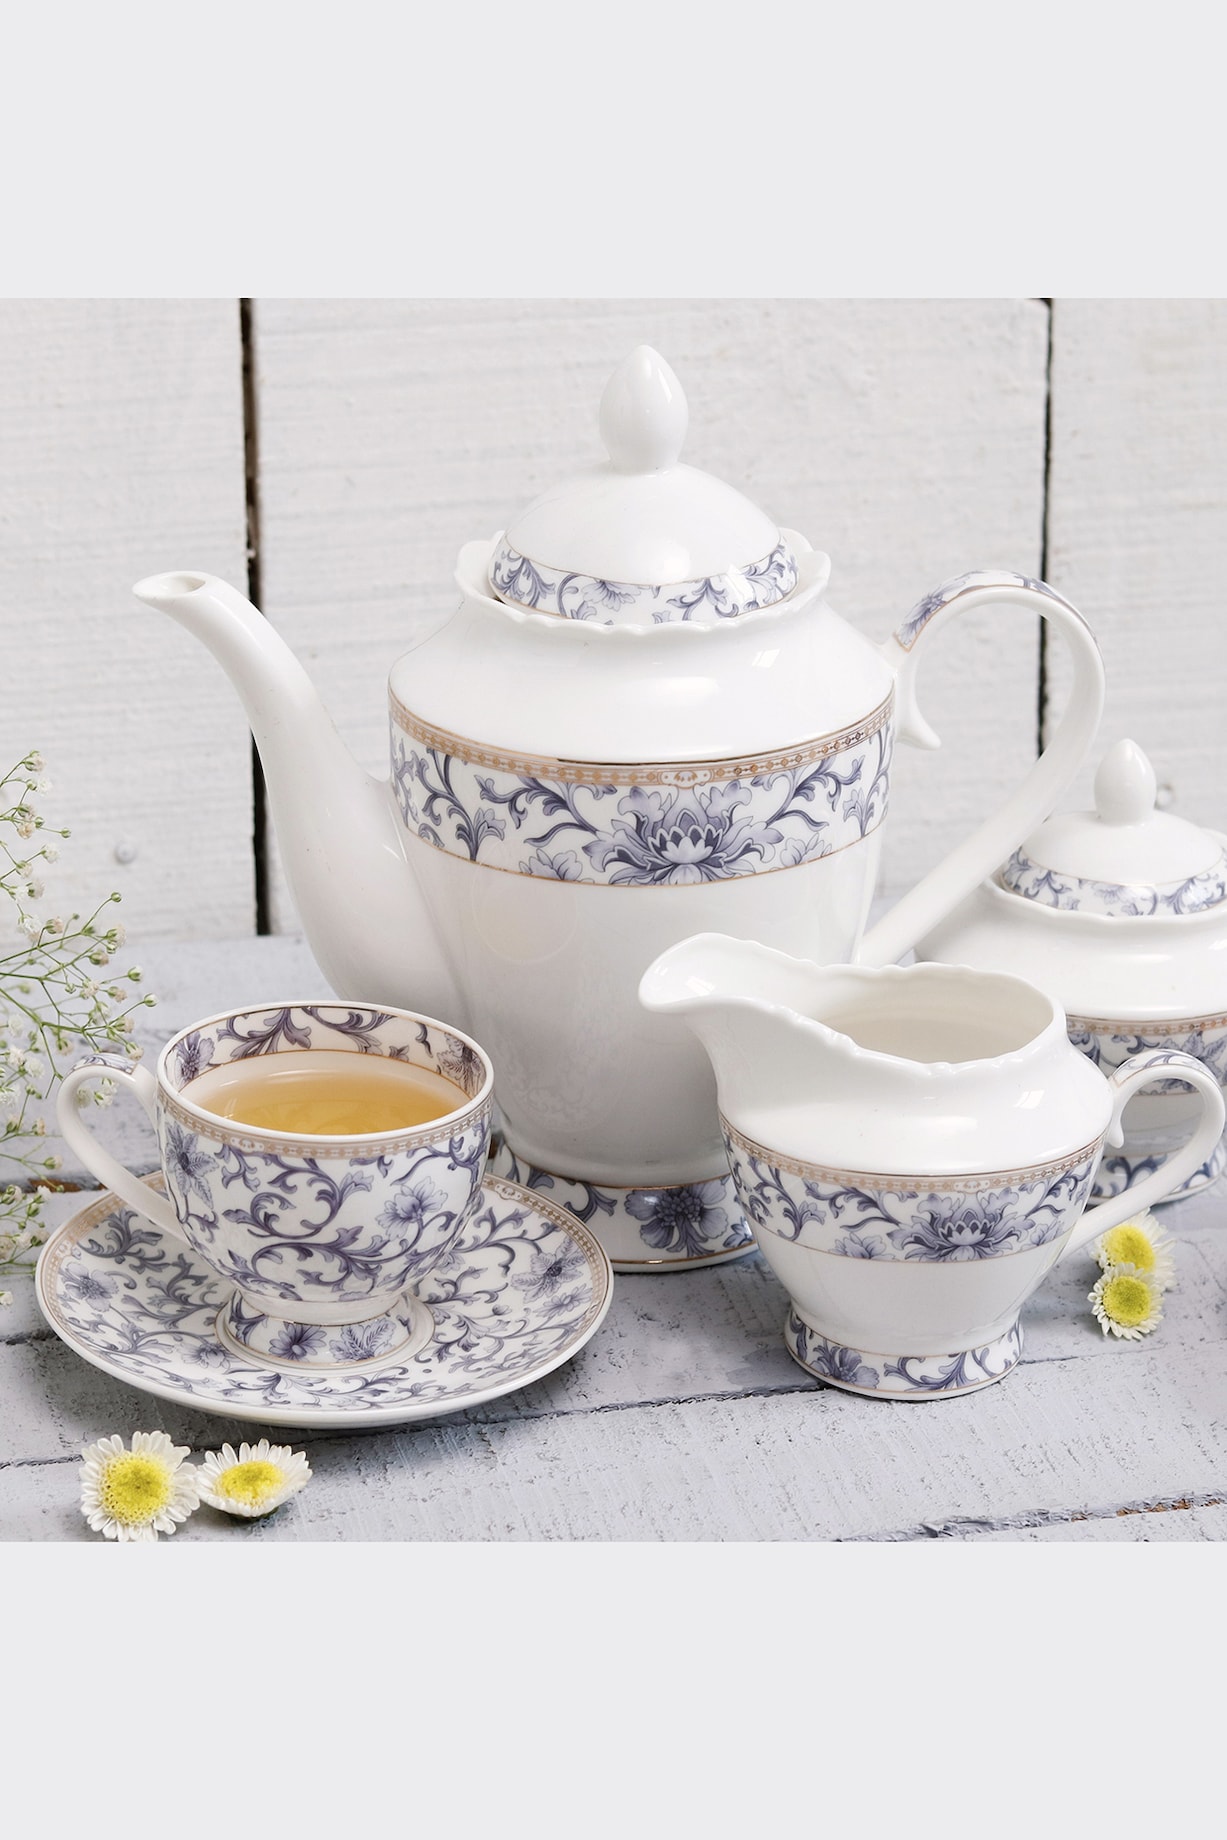 White Finest Premium Porcelain Floral Tea Set Design by Vigneto at